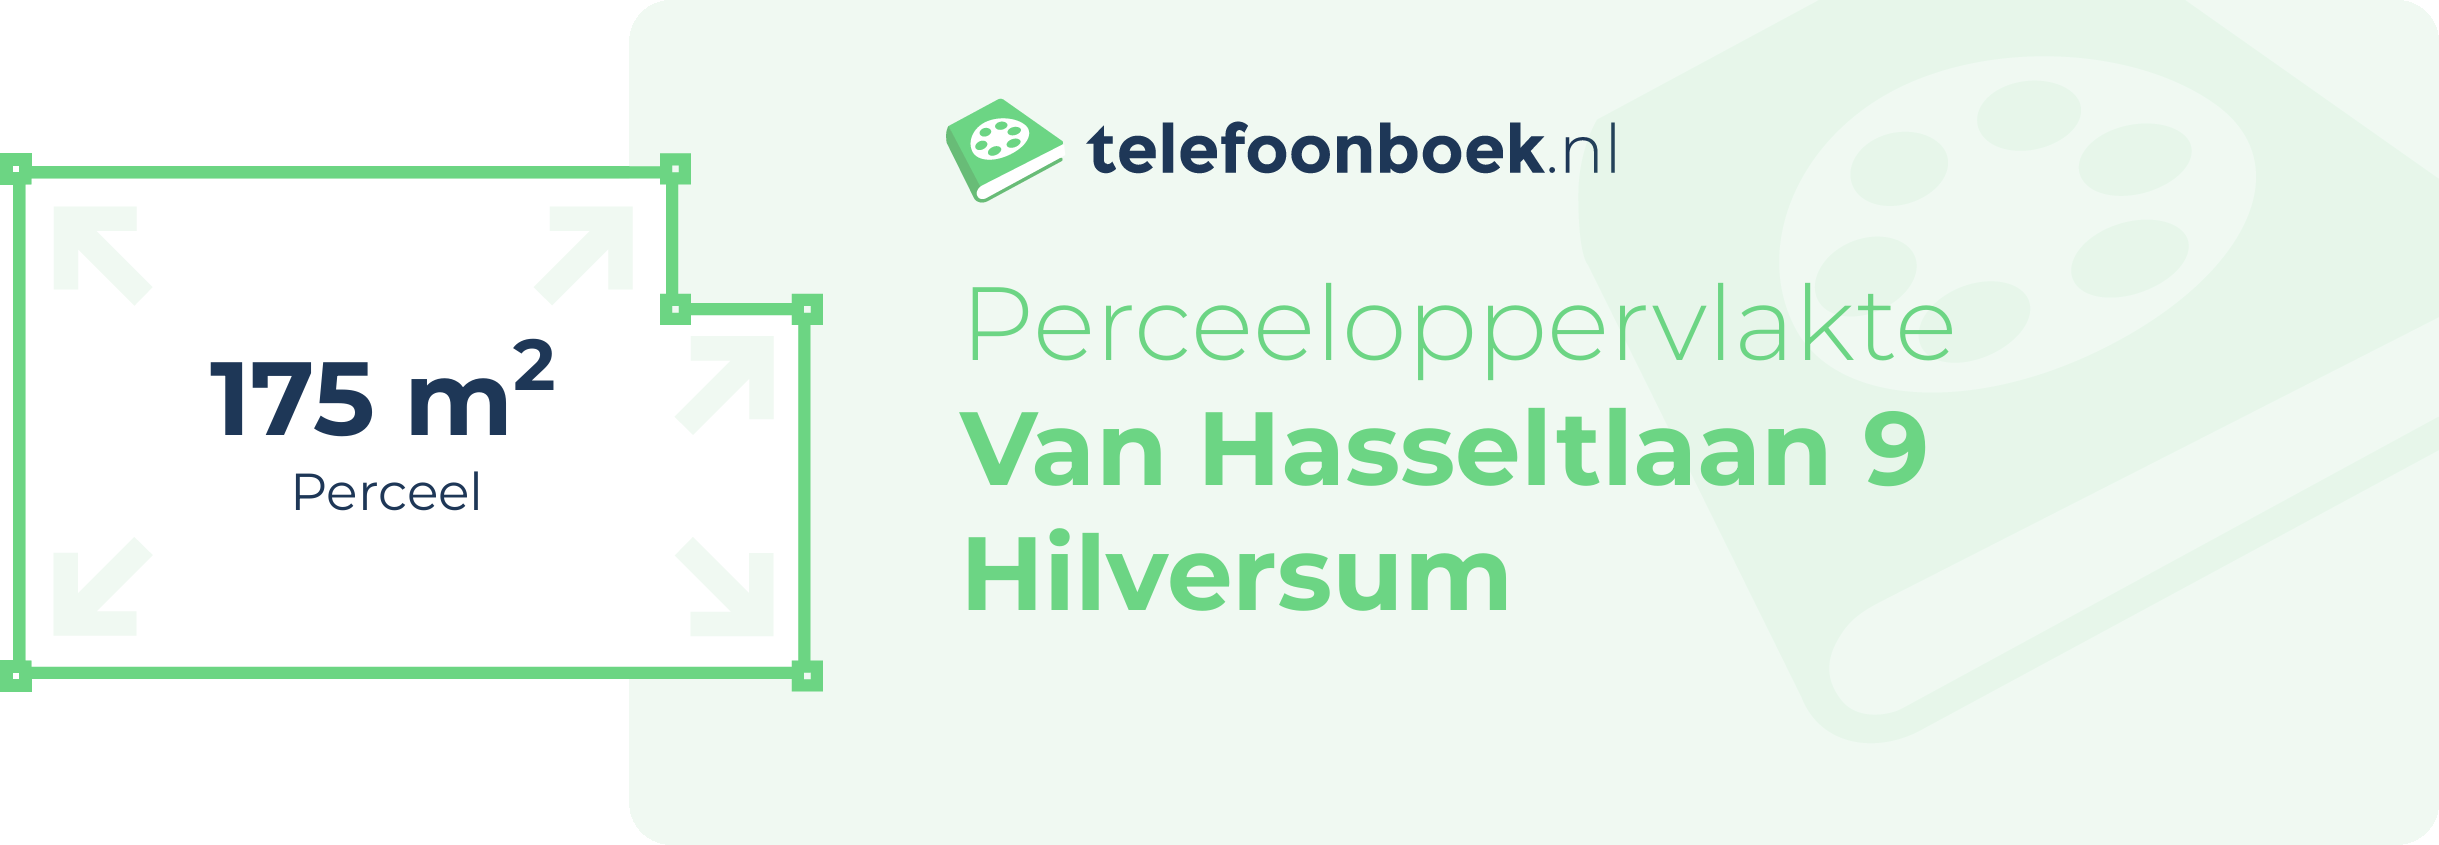 Perceeloppervlakte Van Hasseltlaan 9 Hilversum